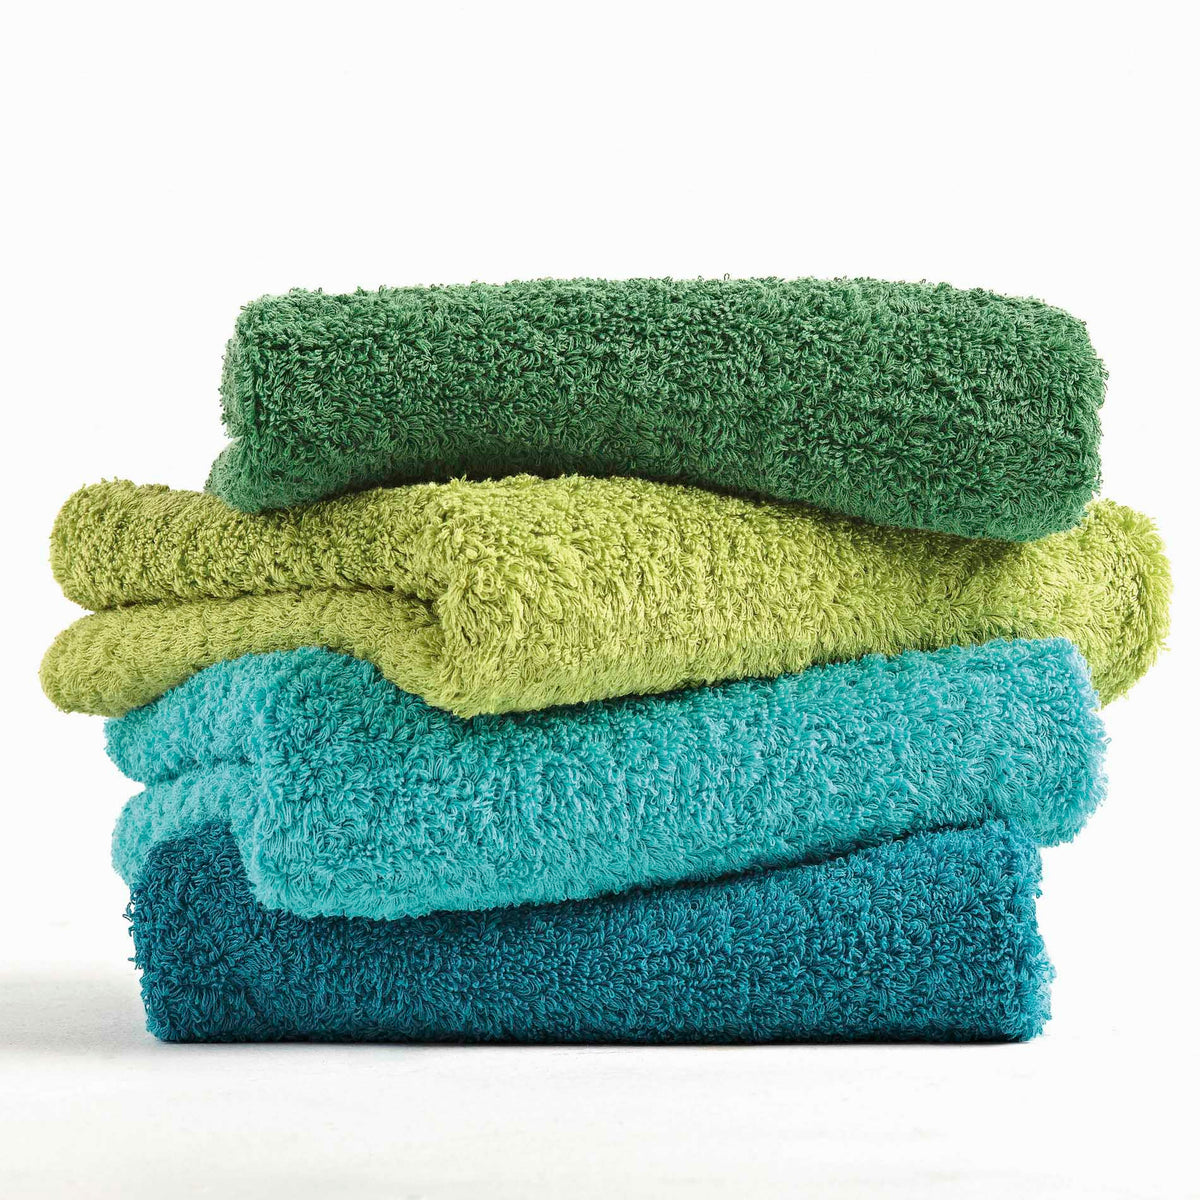 https://flandb.com/cdn/shop/products/Fine-Linen-and-Bath-Abyss-Habidecor-Super-Pile-Bath-Towels-Aqua-Stack_f35e987b-850d-4008-9178-165b99bbc5f8_1200x.jpg?v=1698484587